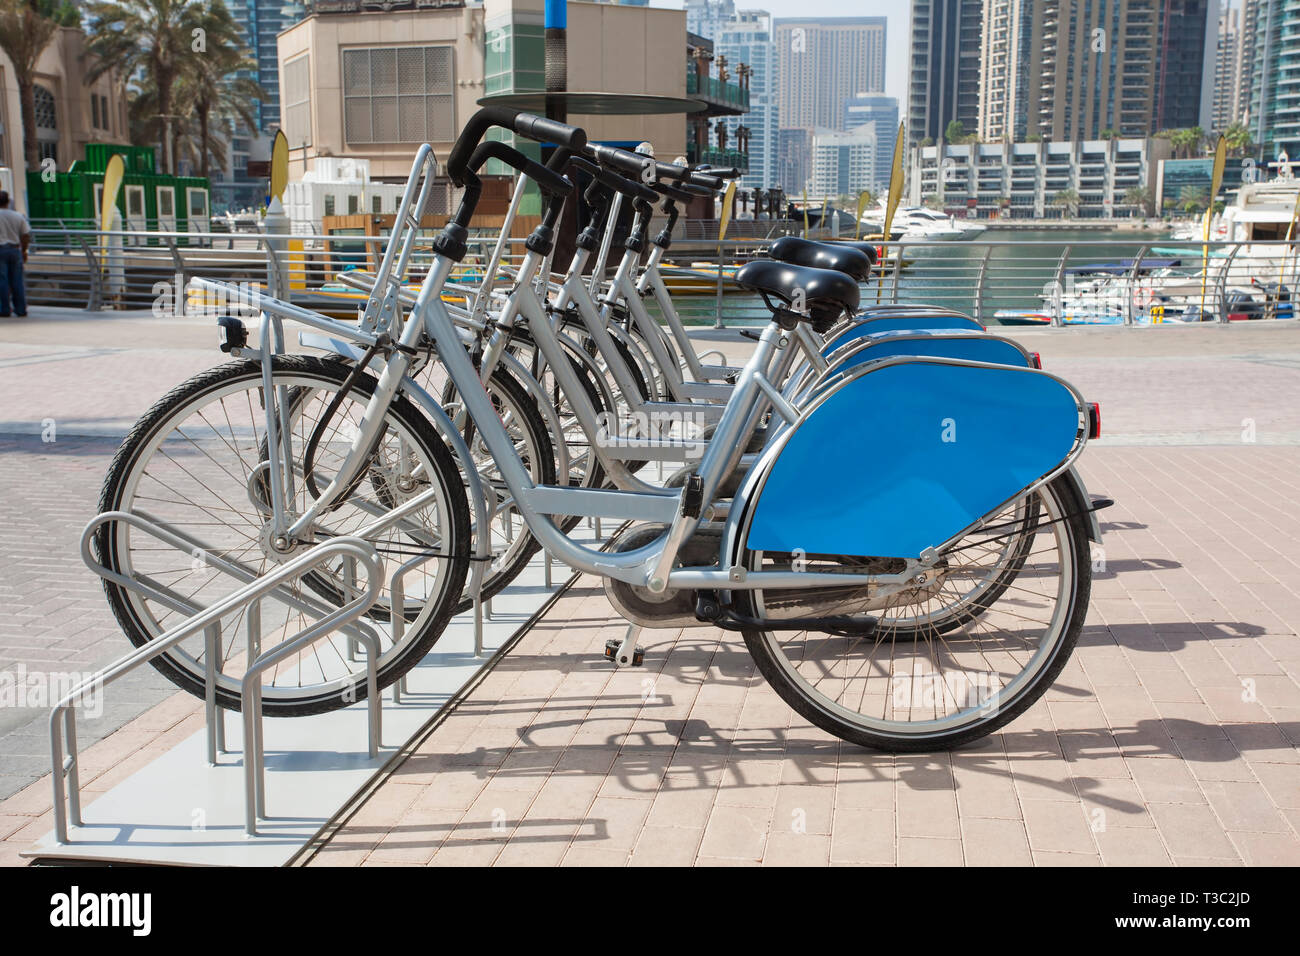 Mieten Sie ein Fahrrad in Dubai Marina Stadtteil Stockfotografie - Alamy